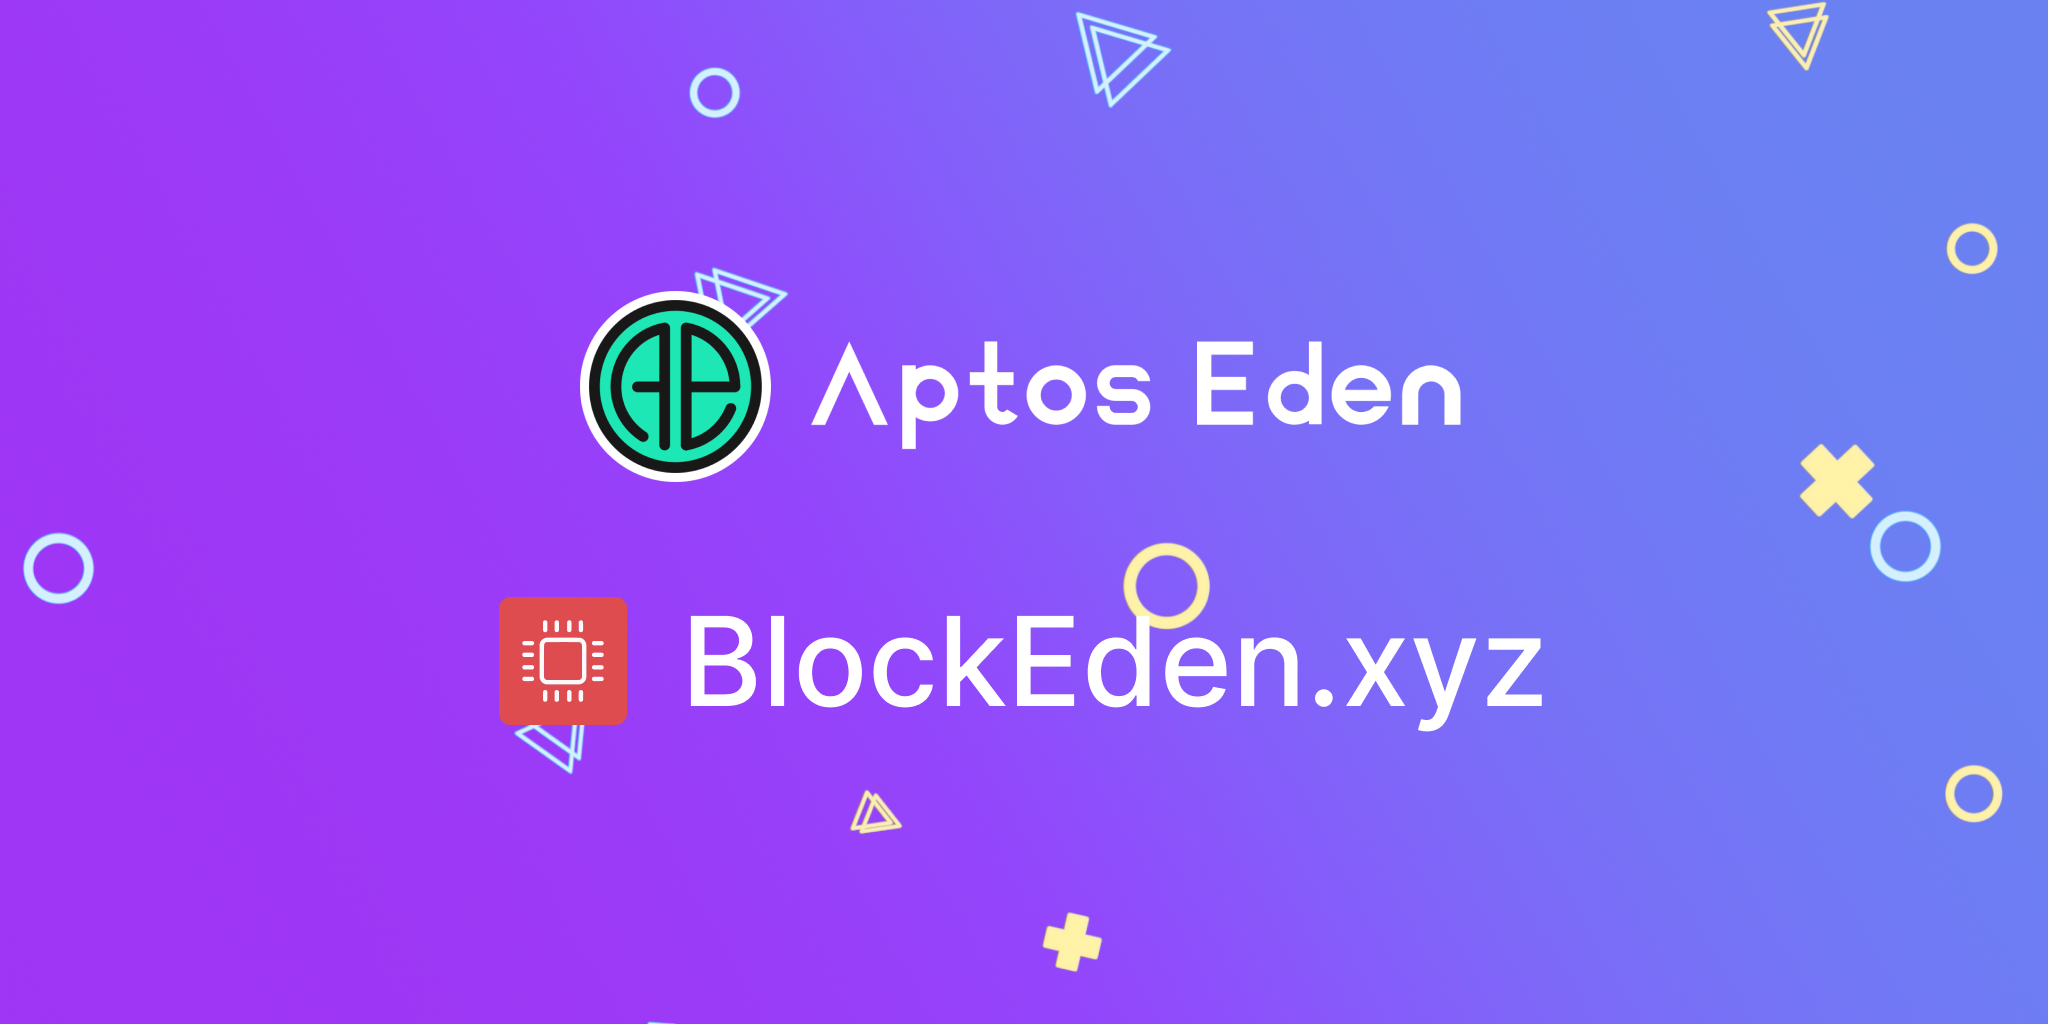 Partnership between Aptos Eden and BlockEden.xyz